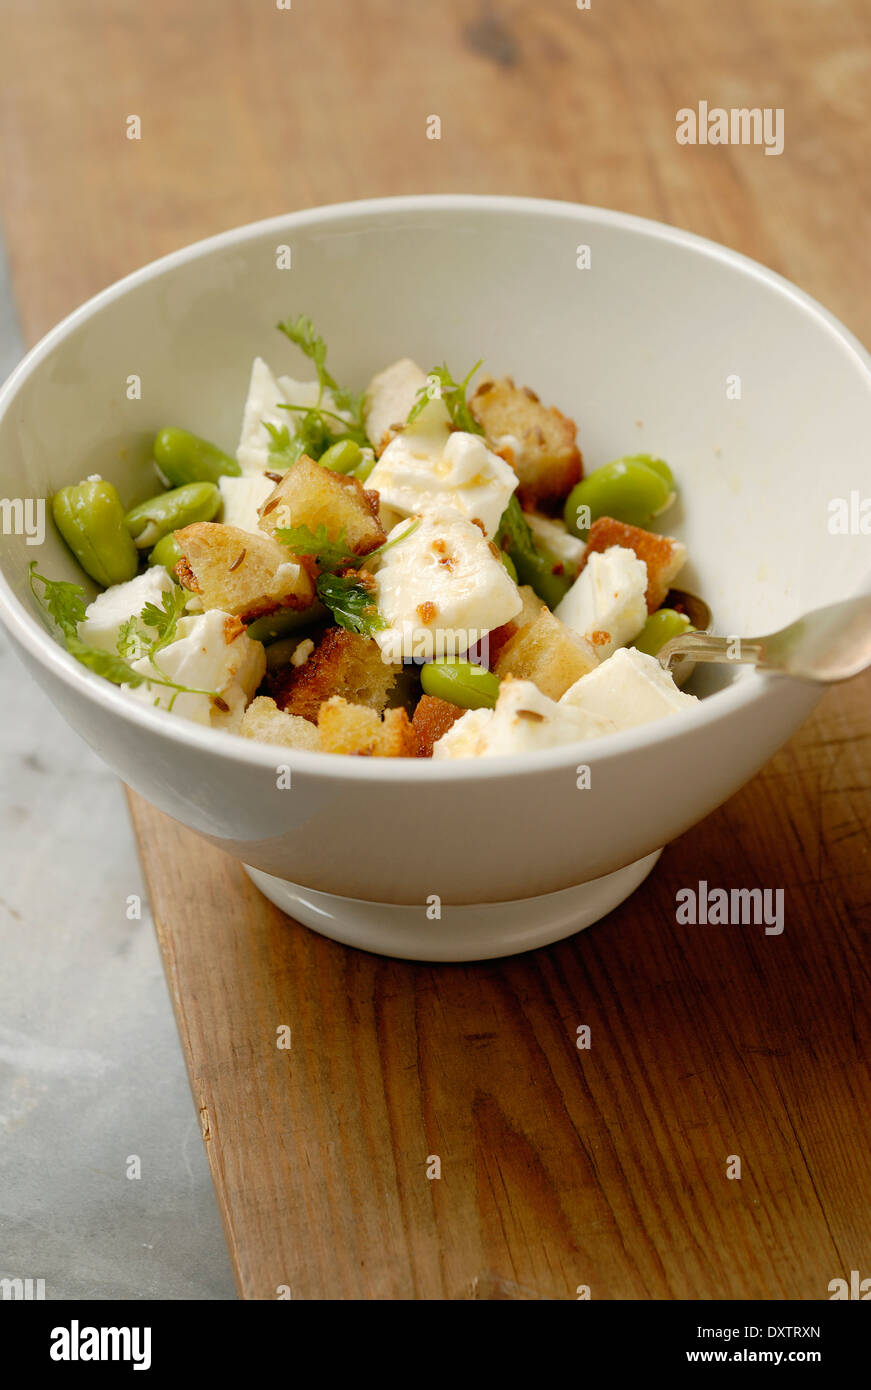 Broad bean,feta and garlic crouton salad Stock Photo